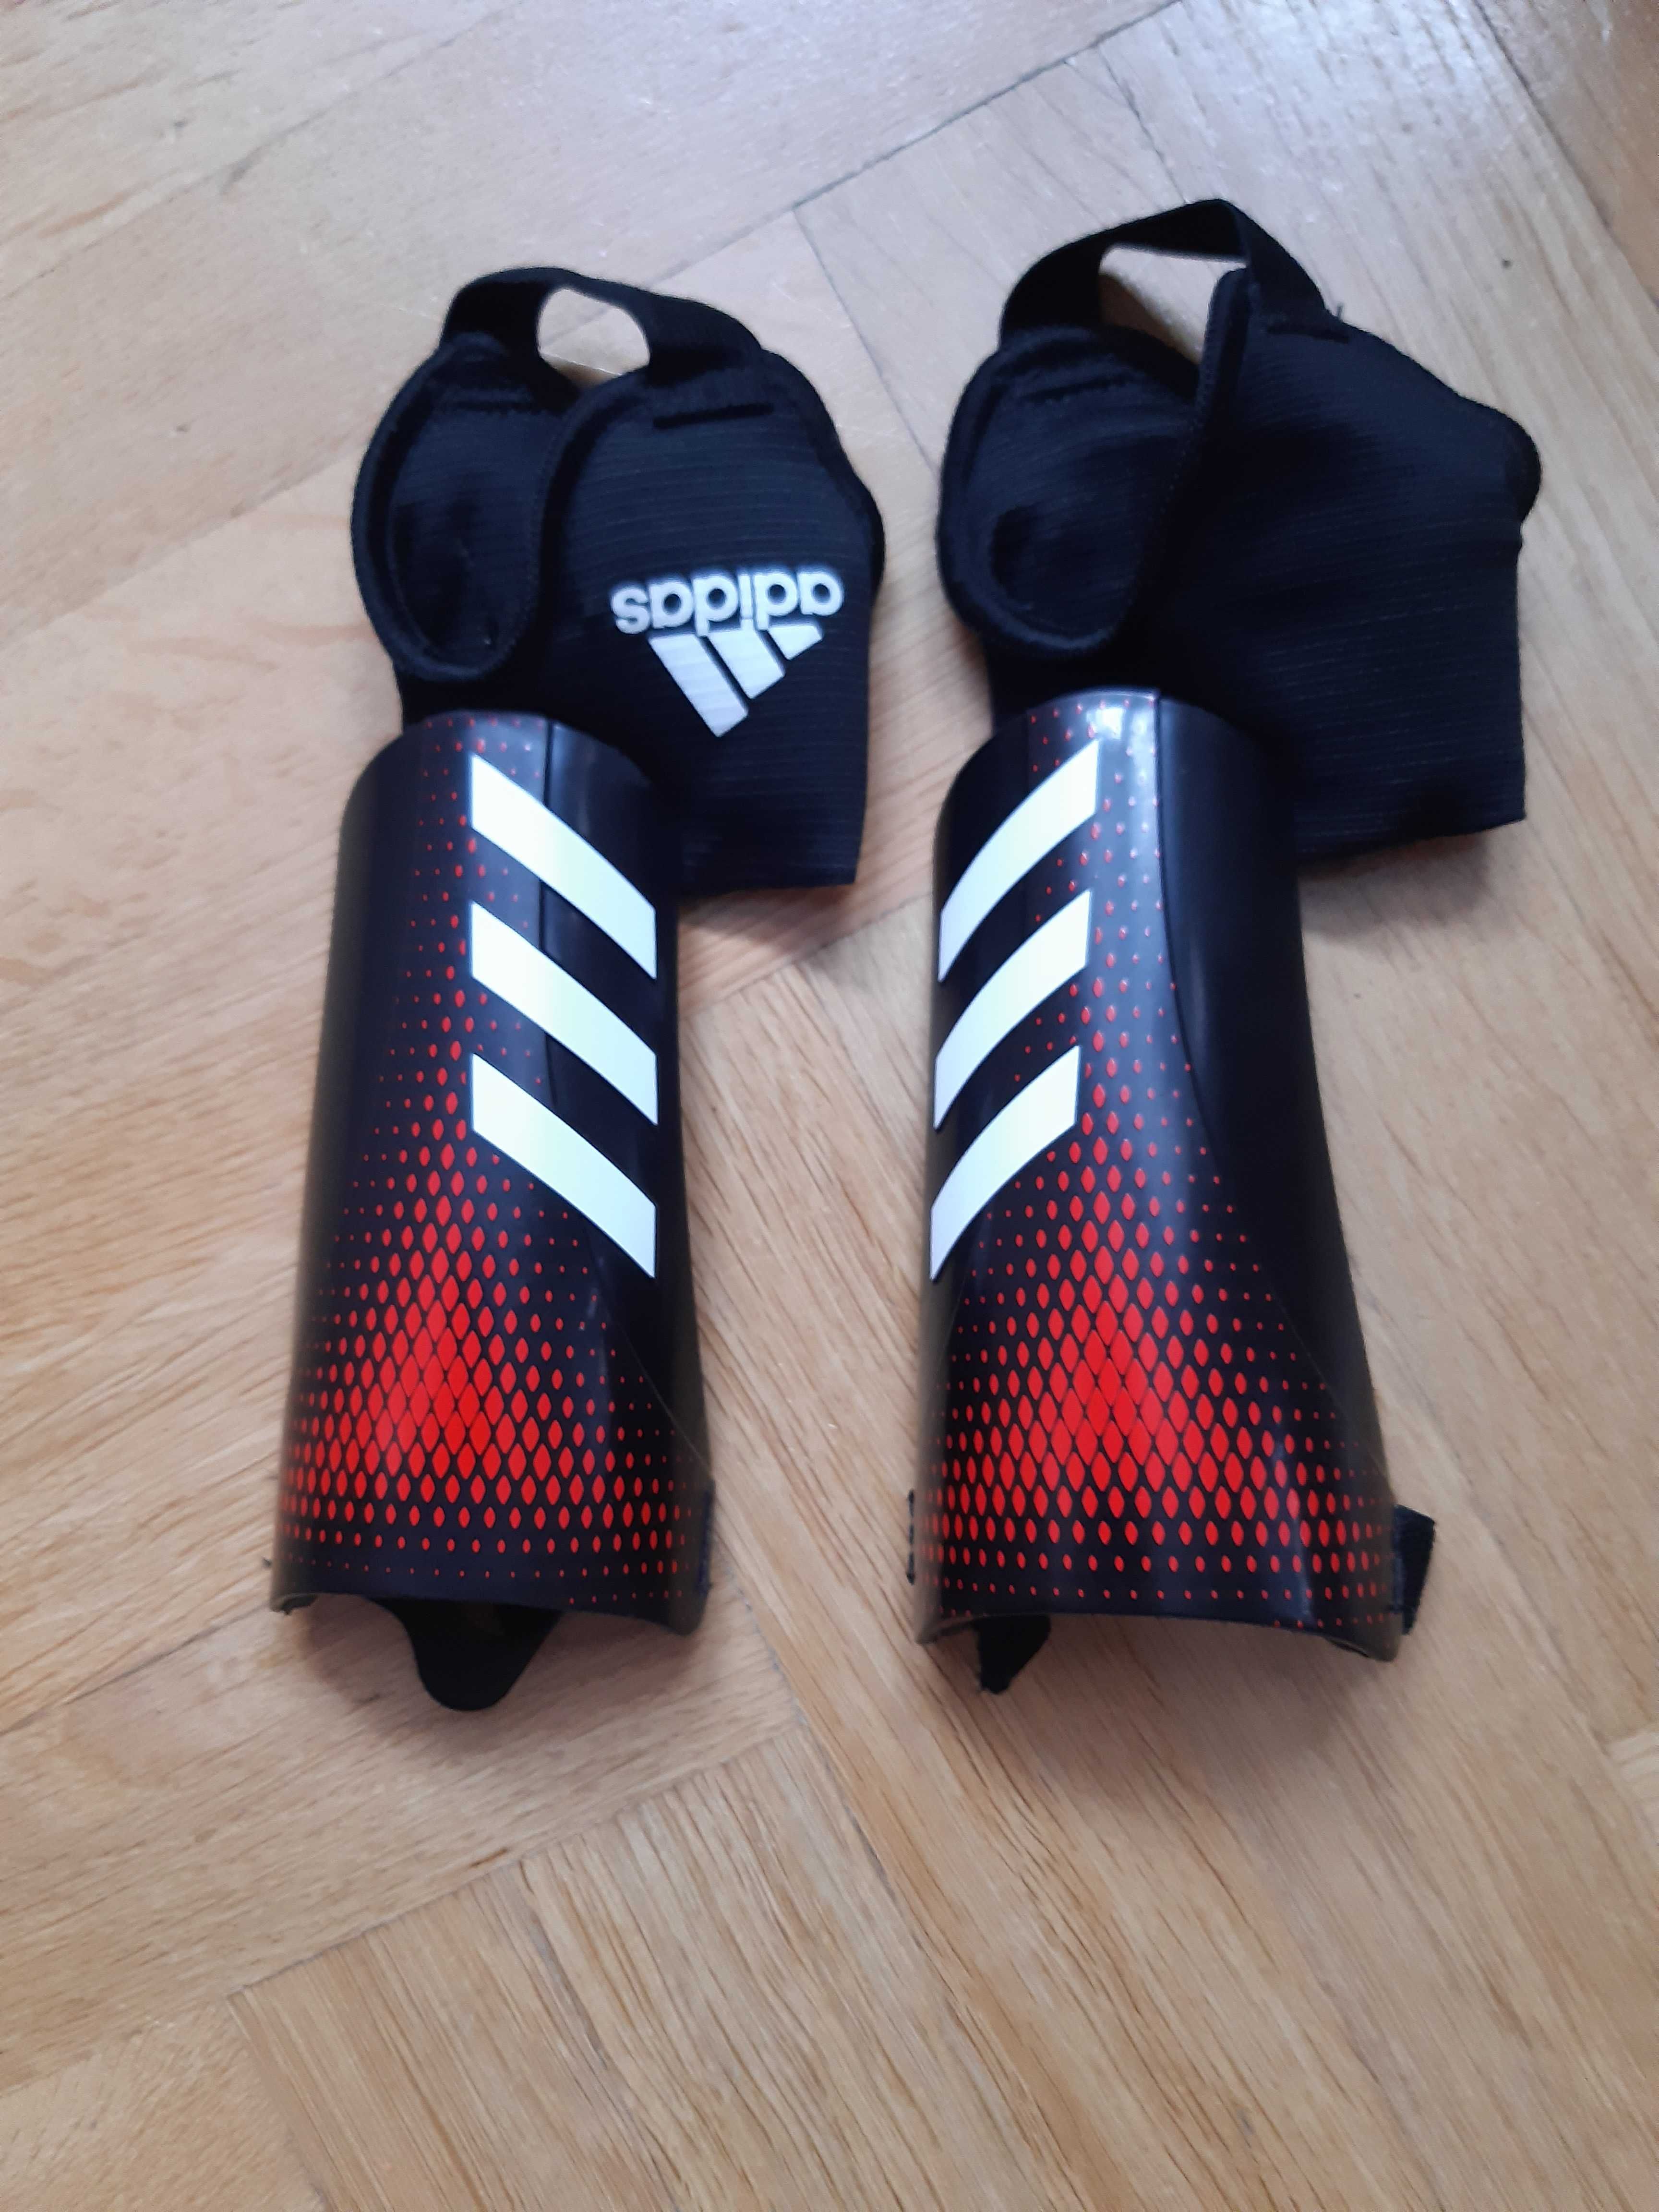 Adidas Predator ochraniacze piłkarskie roz XS